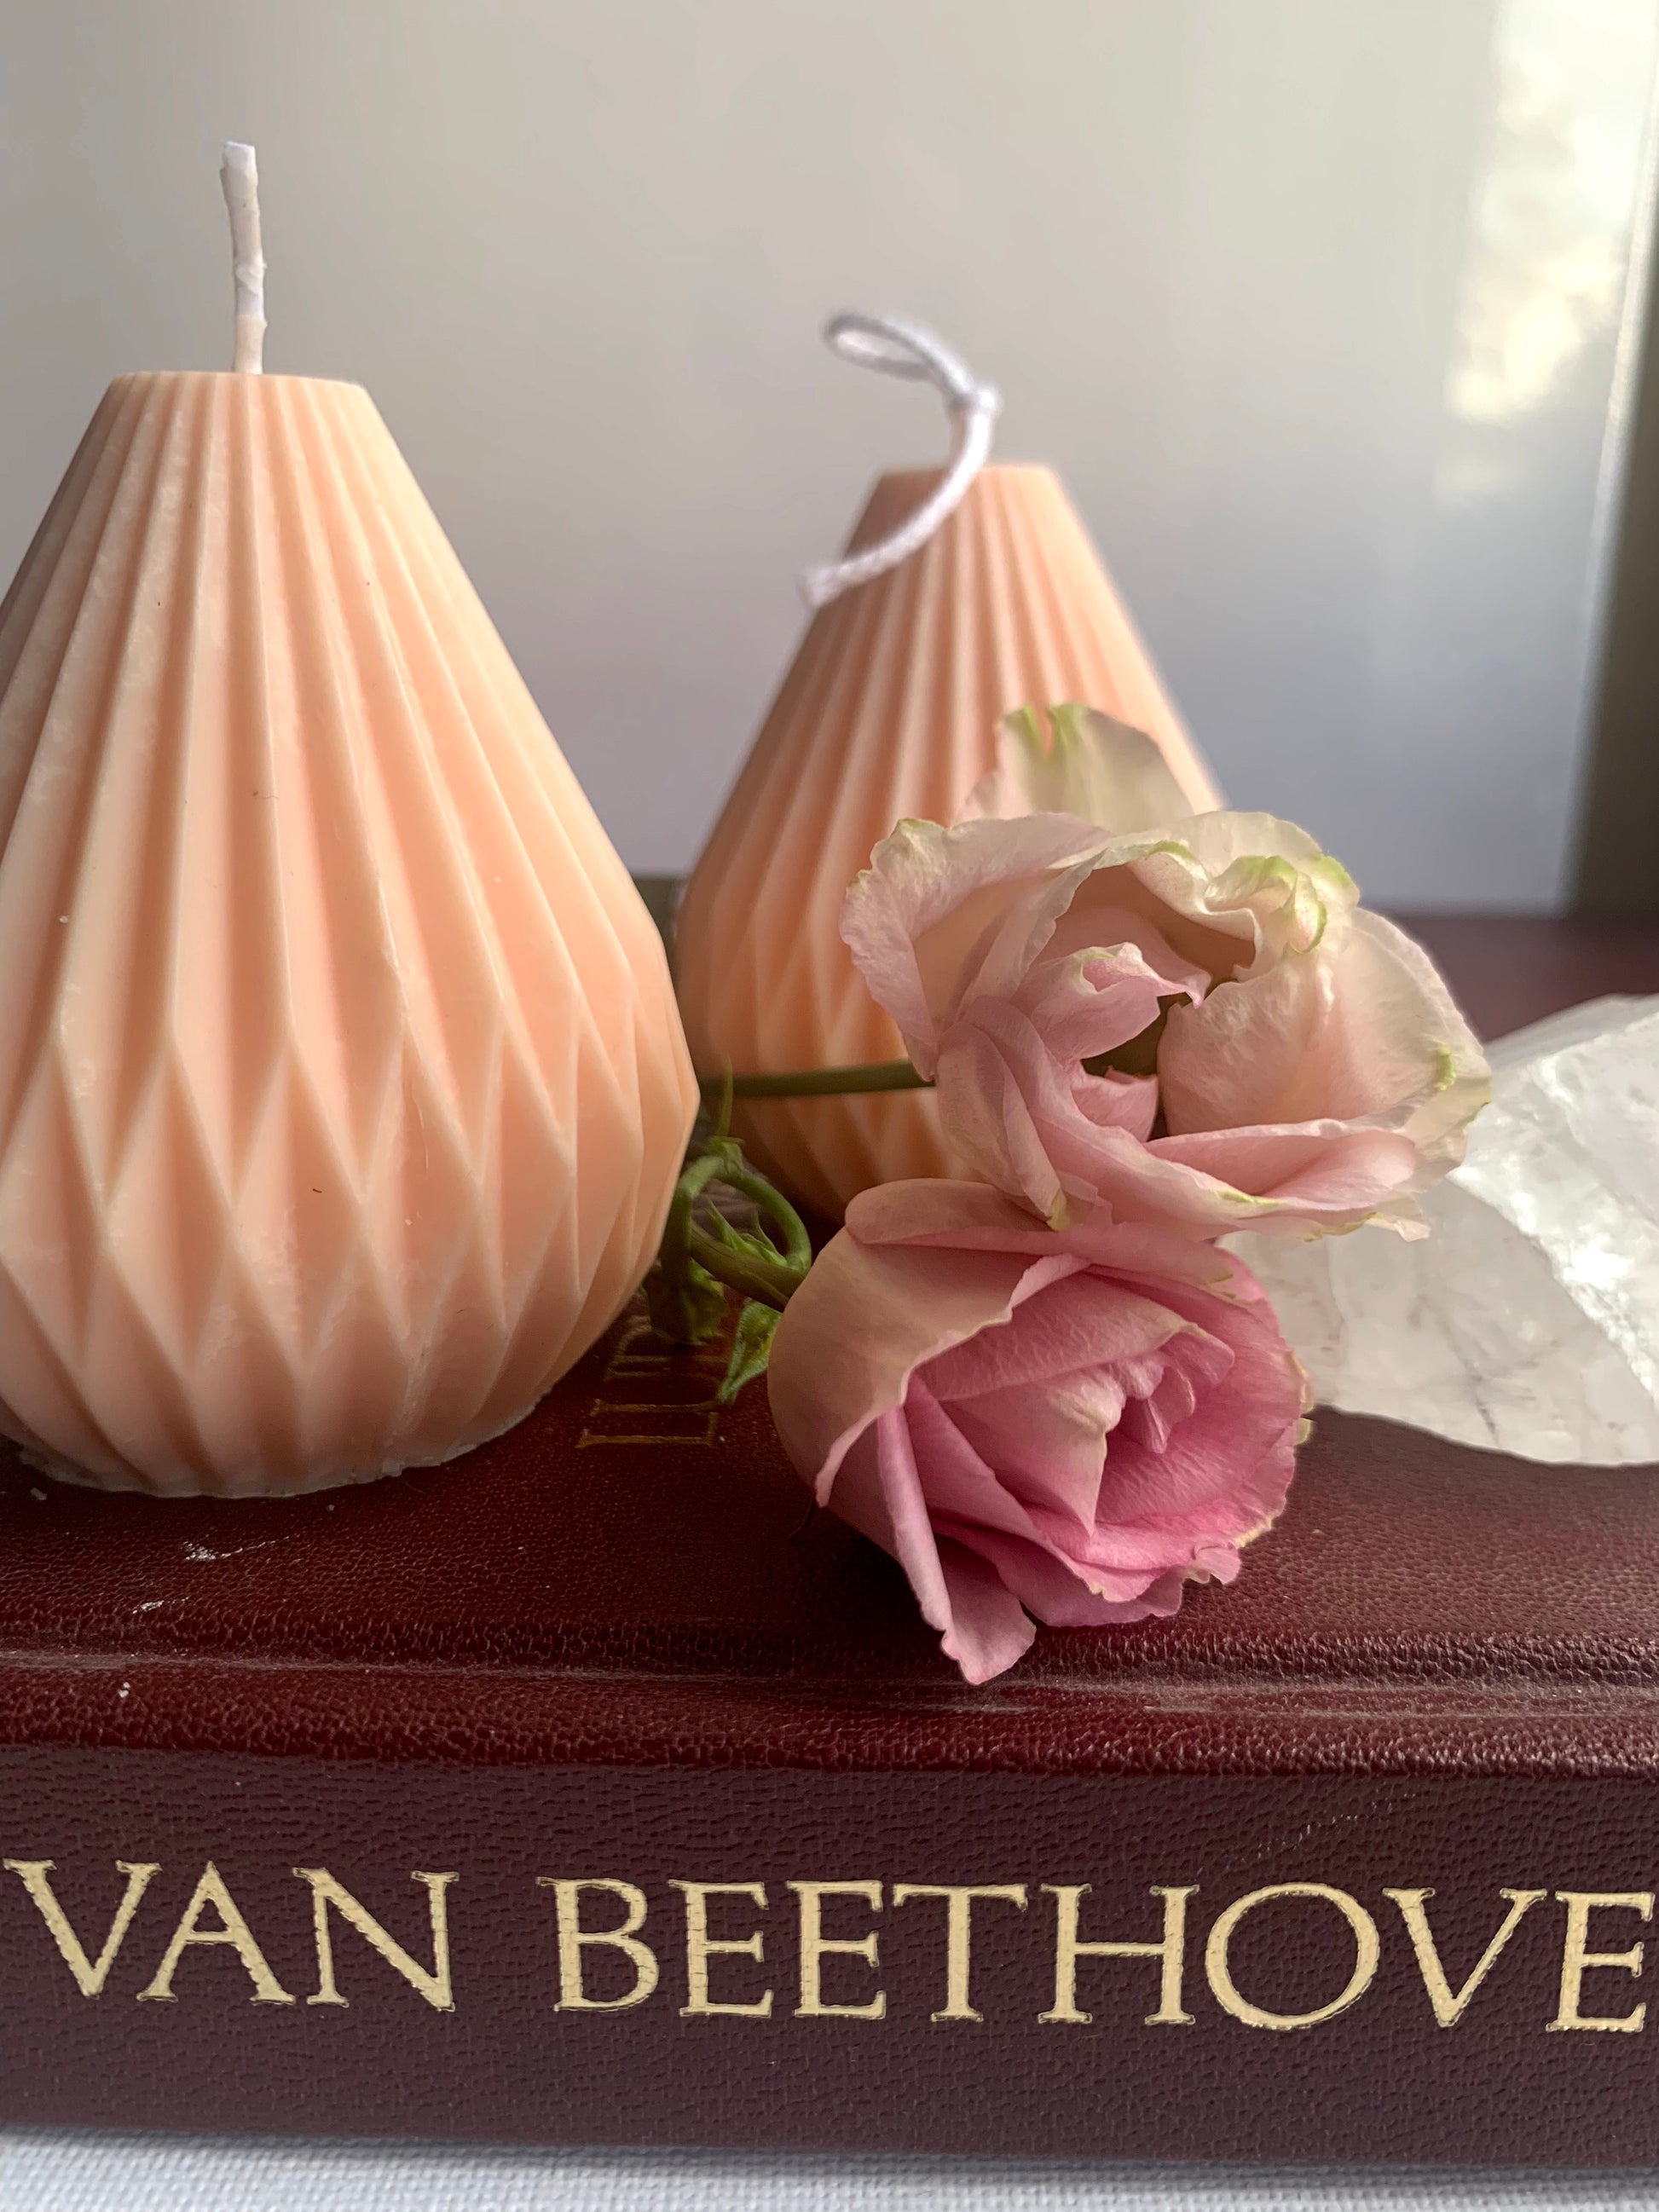 Zu sehen sind zwei Kerzen aus Sojawachs in einem zarten pink peach. Die Form ähnelt wegen des detaillierten Musters gewissen Papierlaternen. Im Vordergrund sind zwei pinke Rosen zu erkennen. 